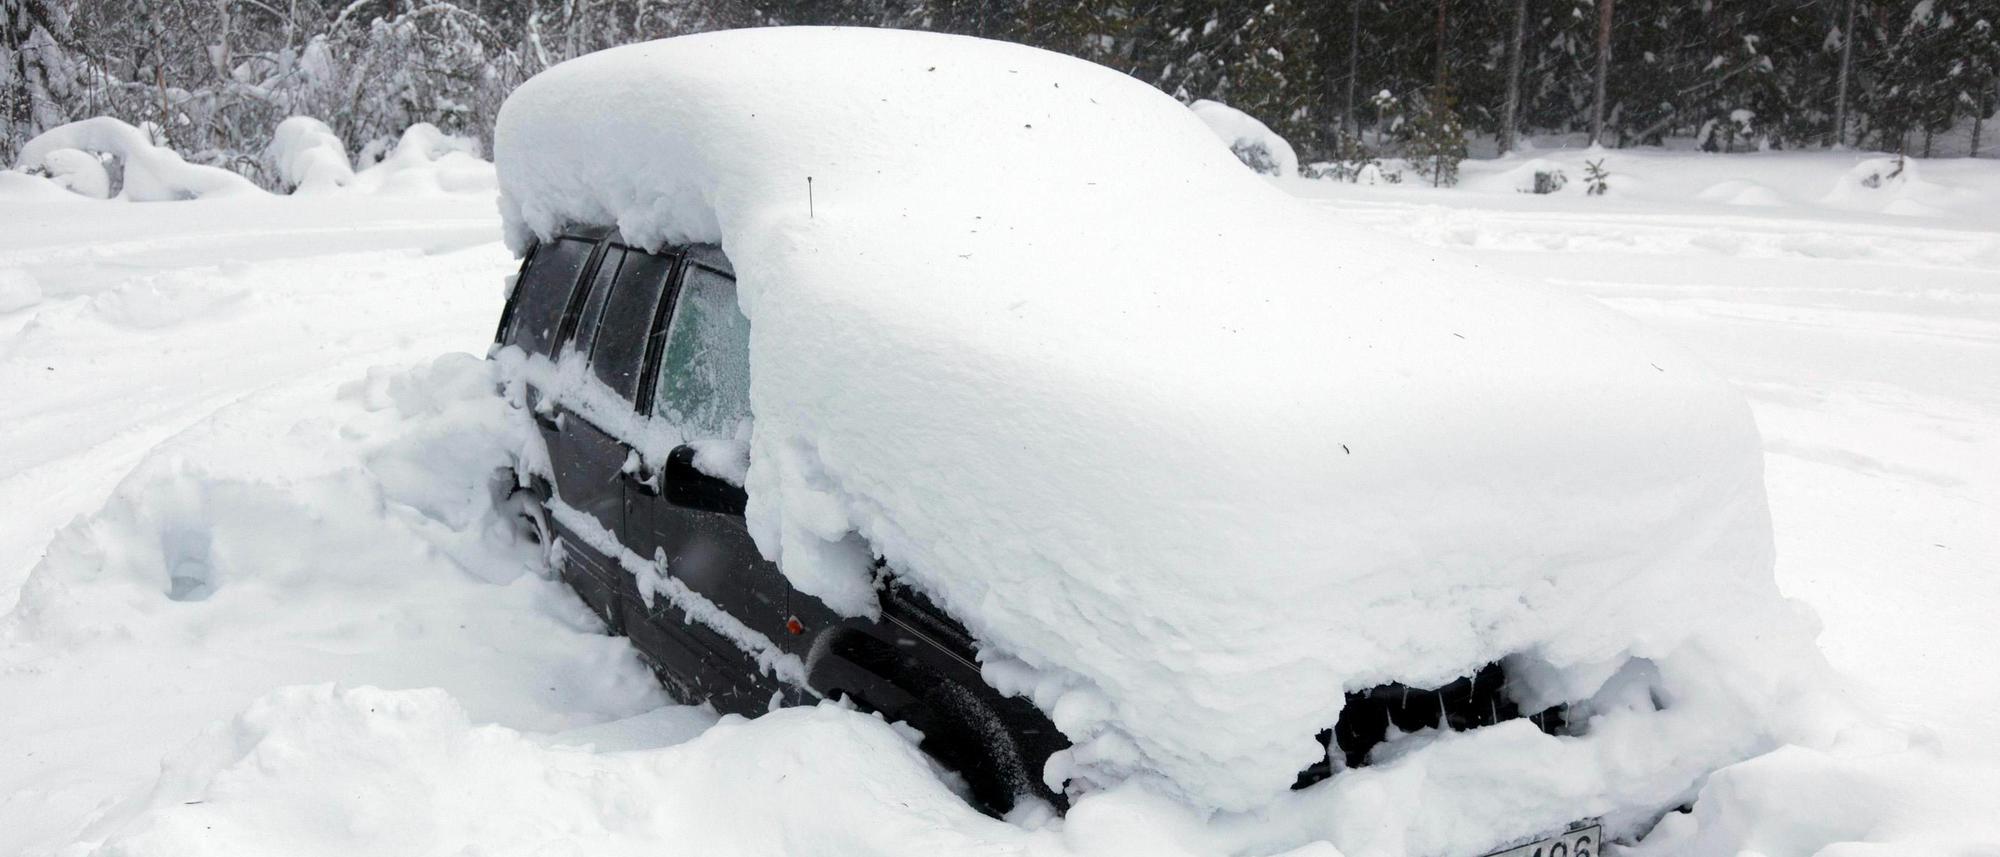 Frau reinigt auto nach einem schneesturm mit einer bürste vom schnee